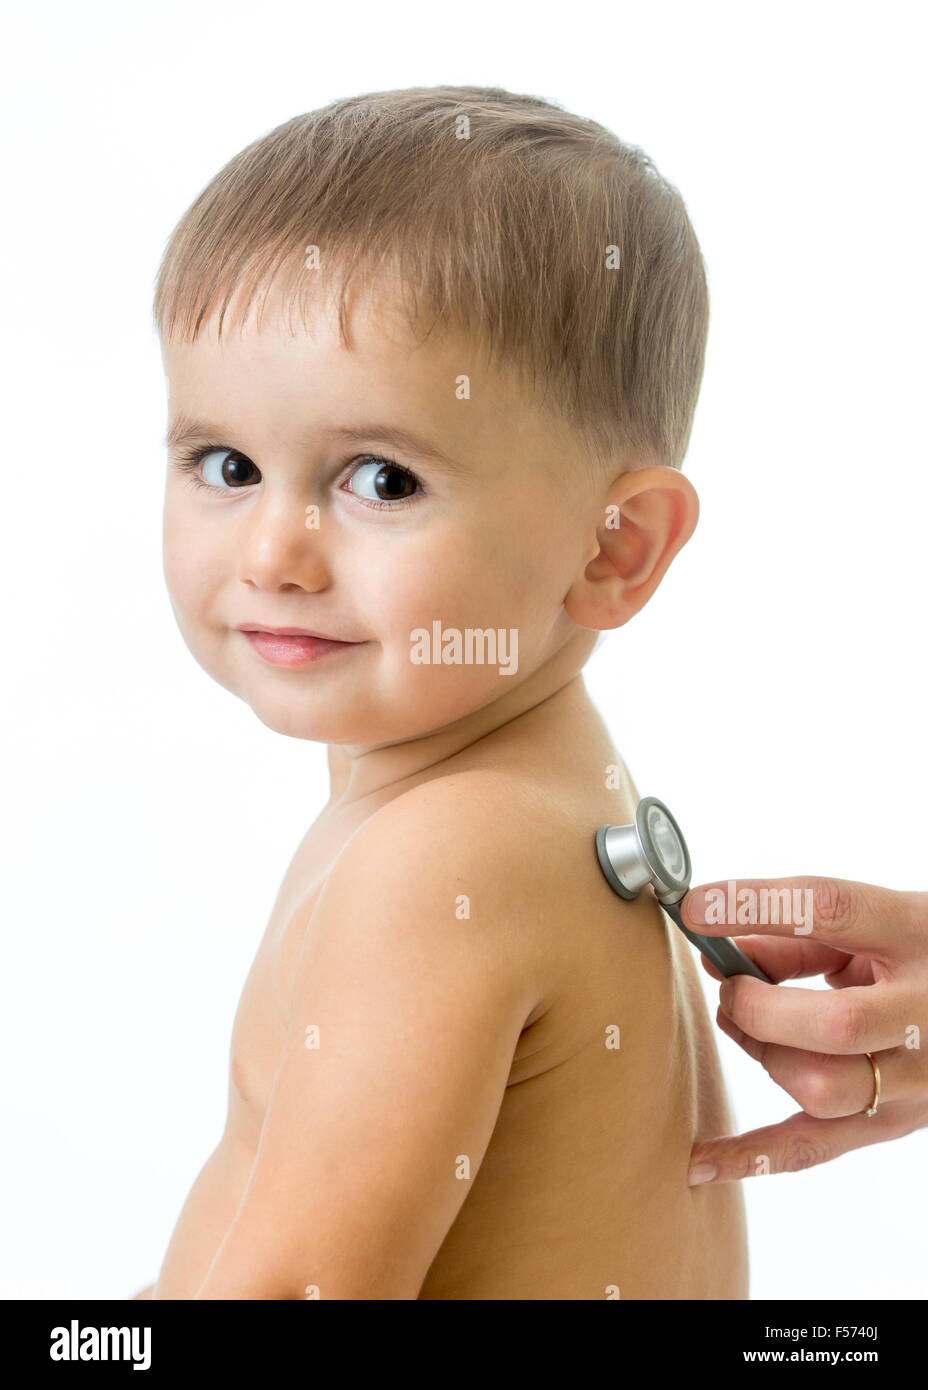 child medical examination Stock Photo